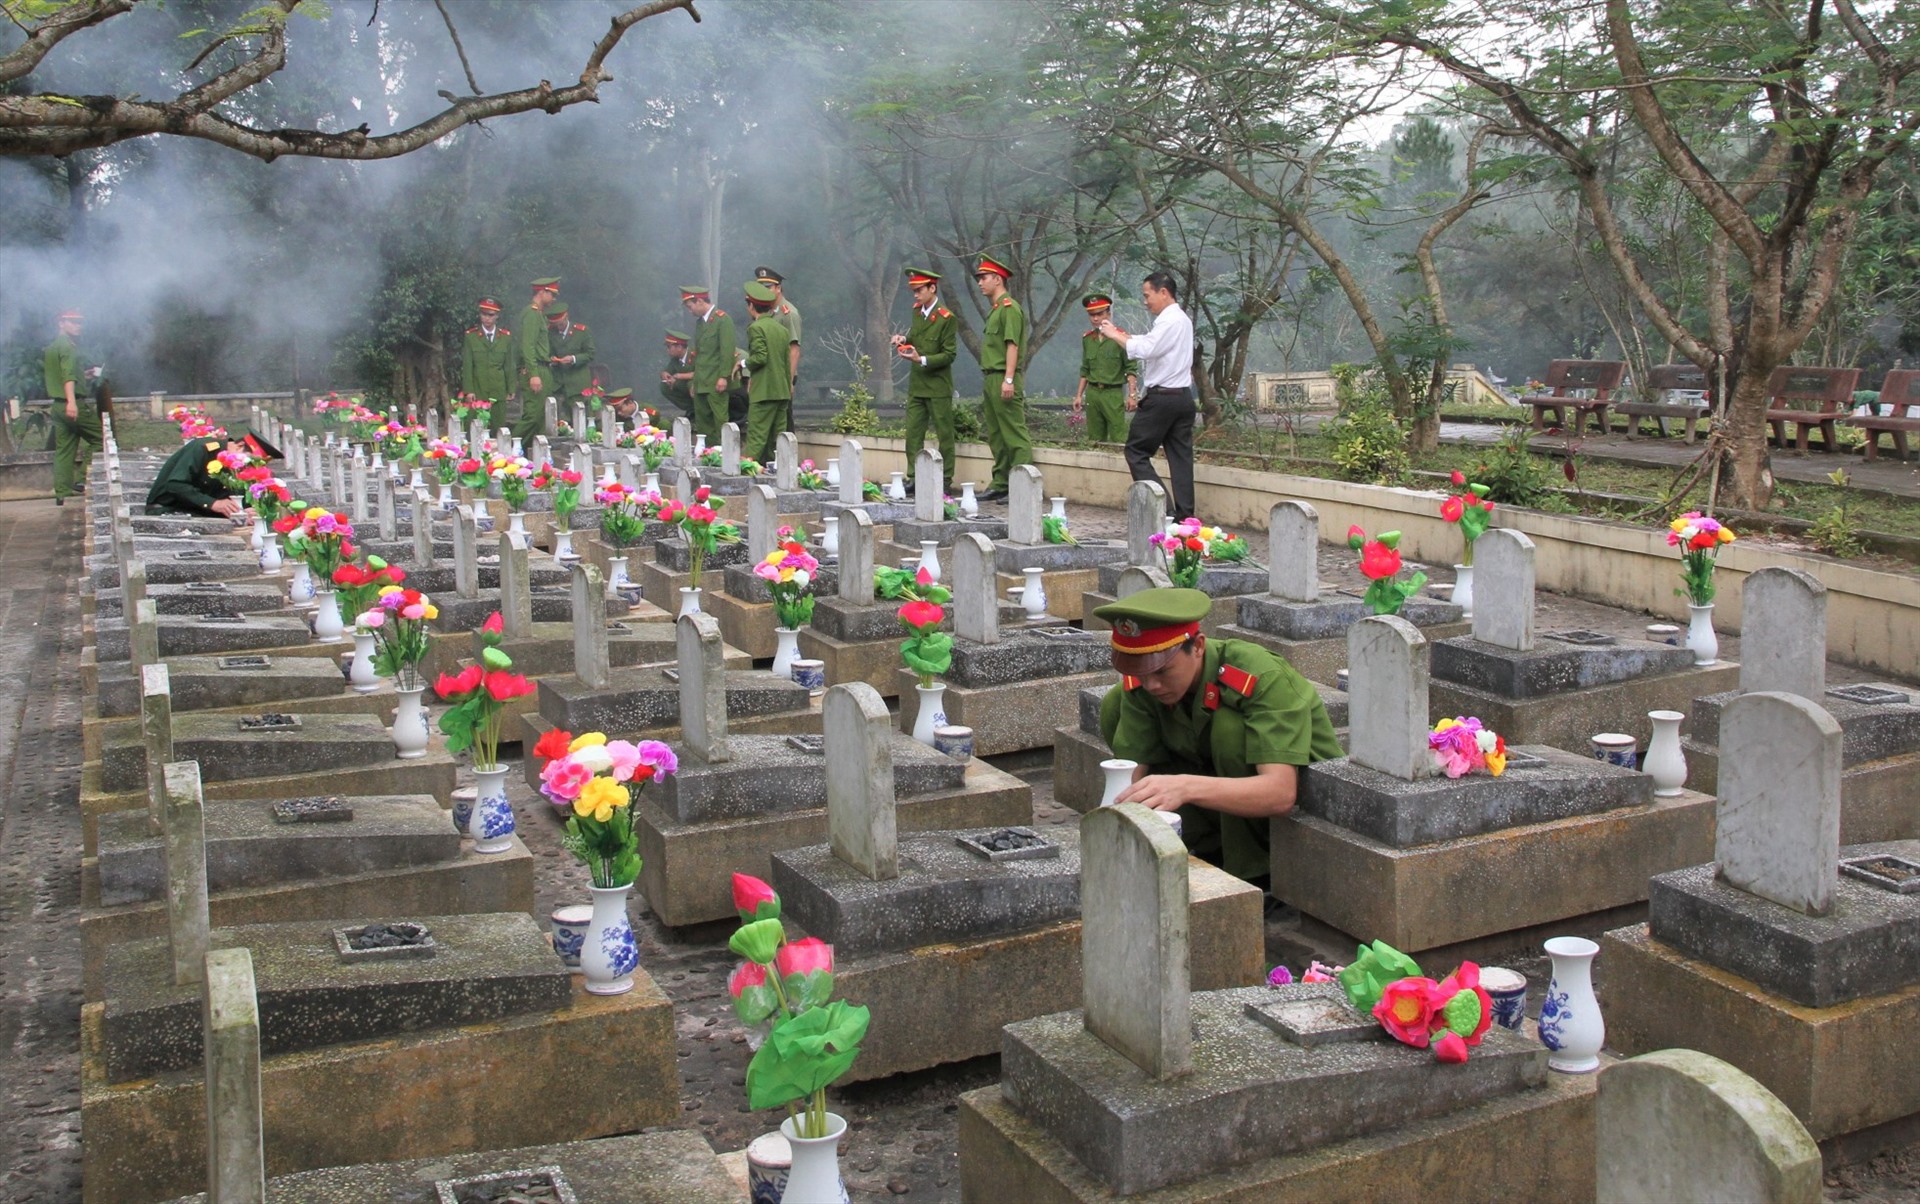 Gắn bình và hoa lên các ngôi mộ ở nghĩa trang liệt sĩ tại tỉnh Quảng Trị. Ảnh: Hưng Thơ.